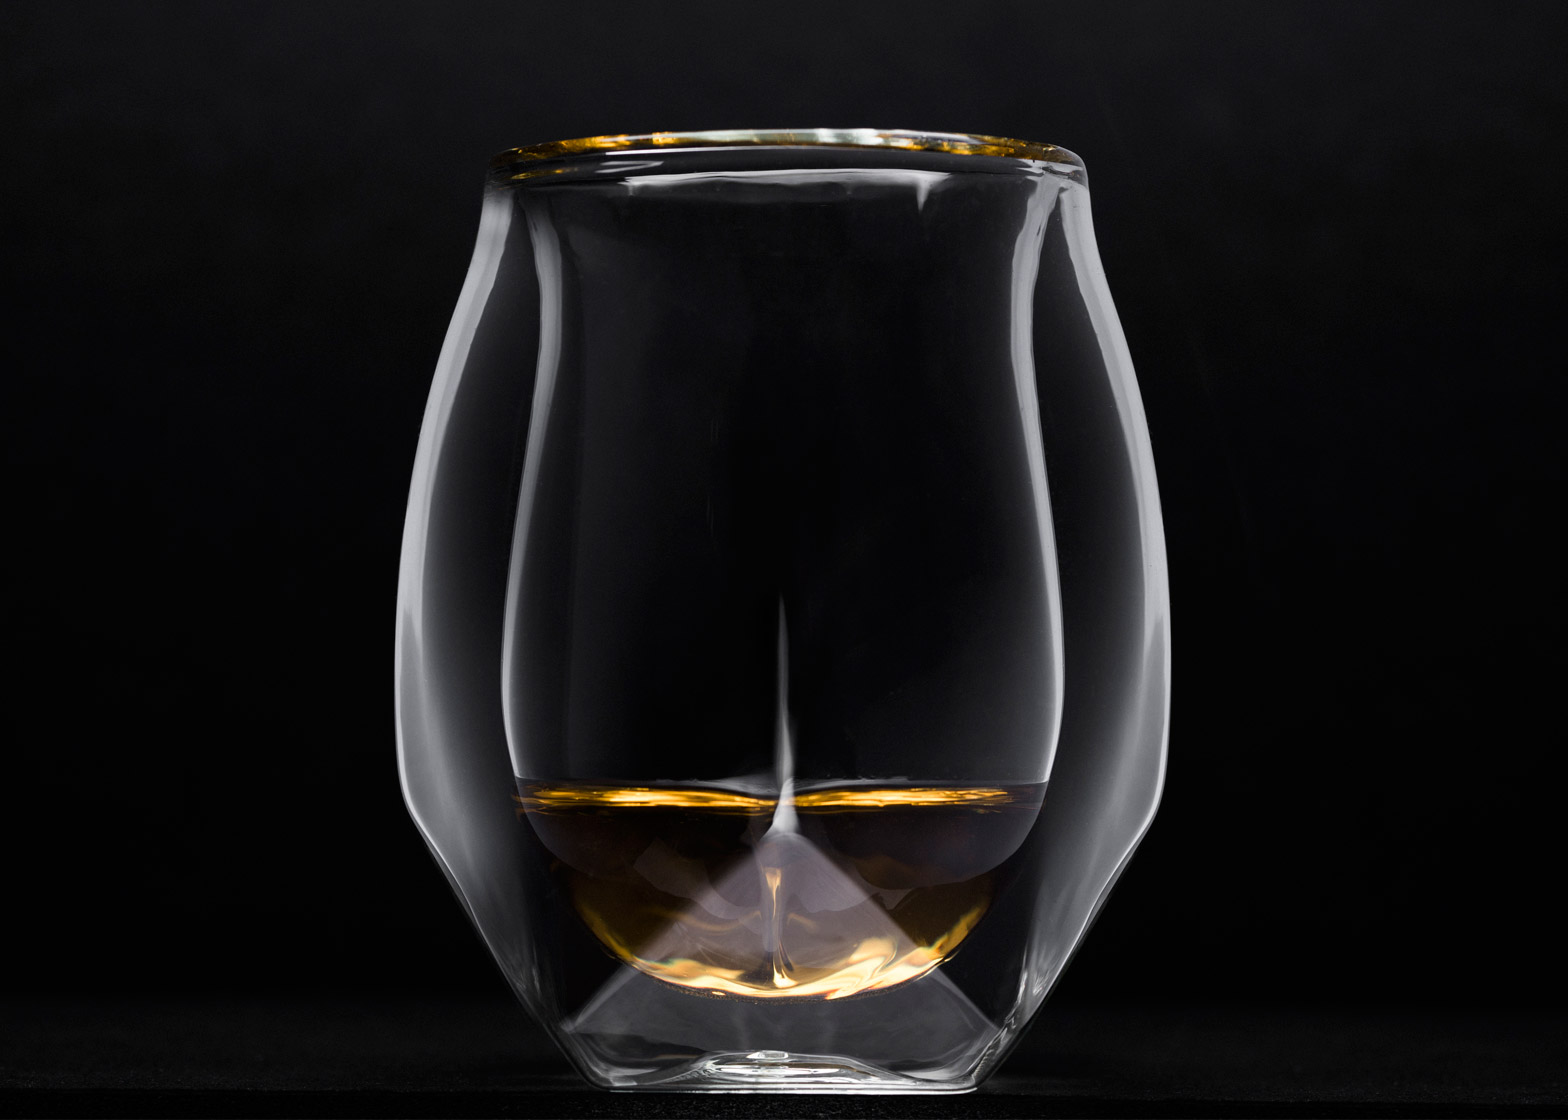 https://static.dezeen.com/uploads/2015/10/Whiskey-glass_Norlan-Glass_dezeen_1568_0.jpg